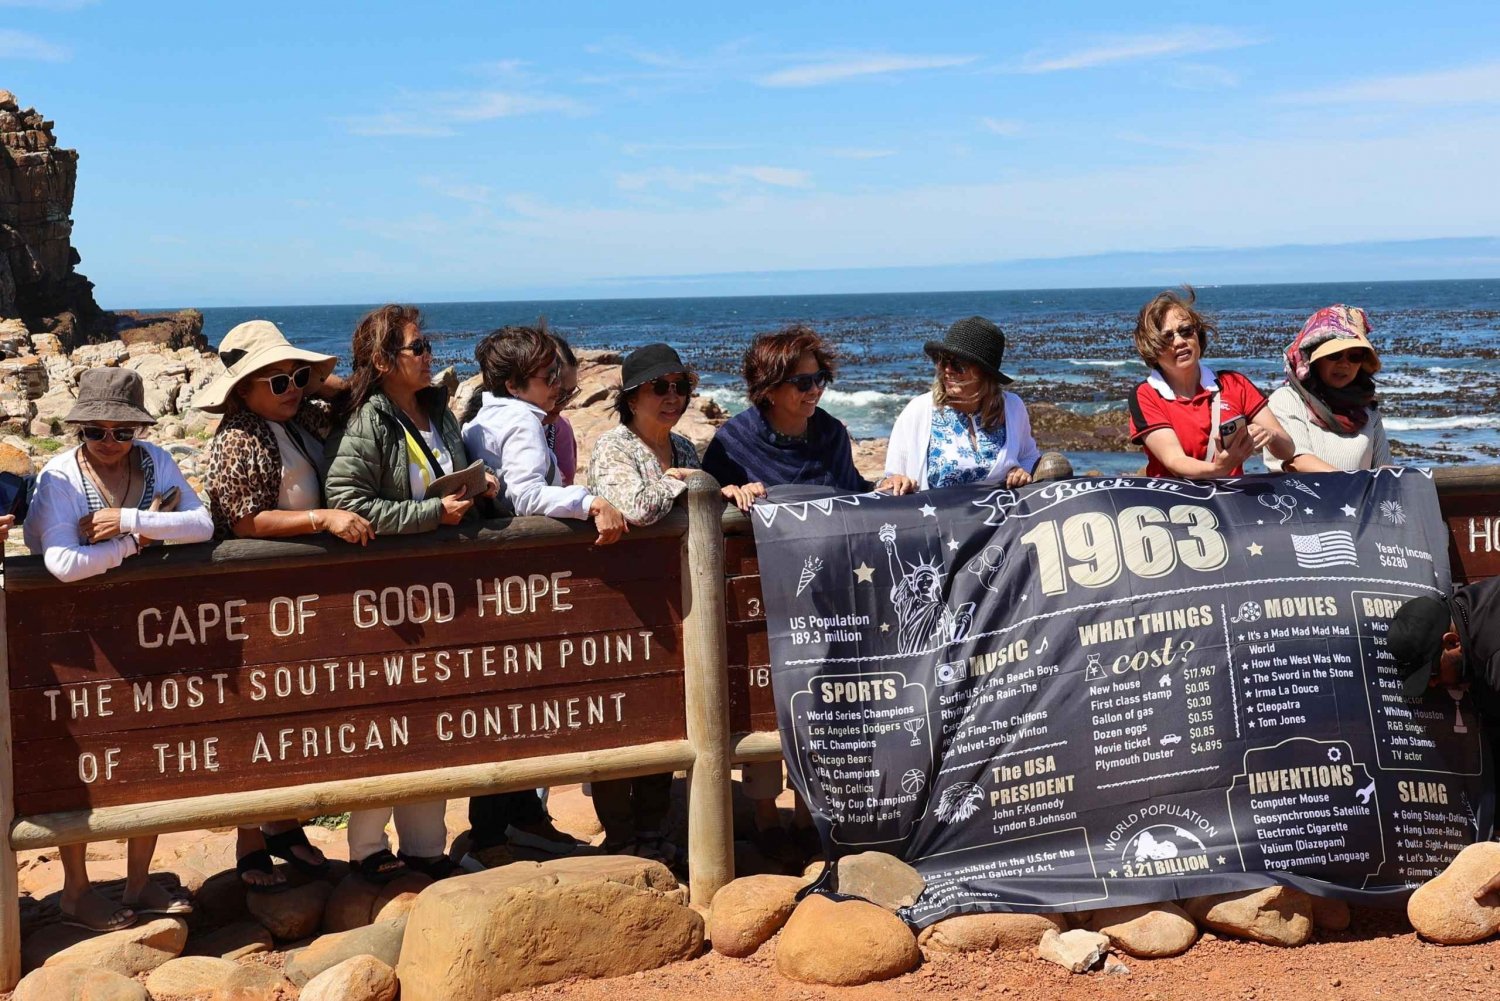 Da Cidade do Cabo: Excursão de 1 dia a Cape Point e Boulders Beach